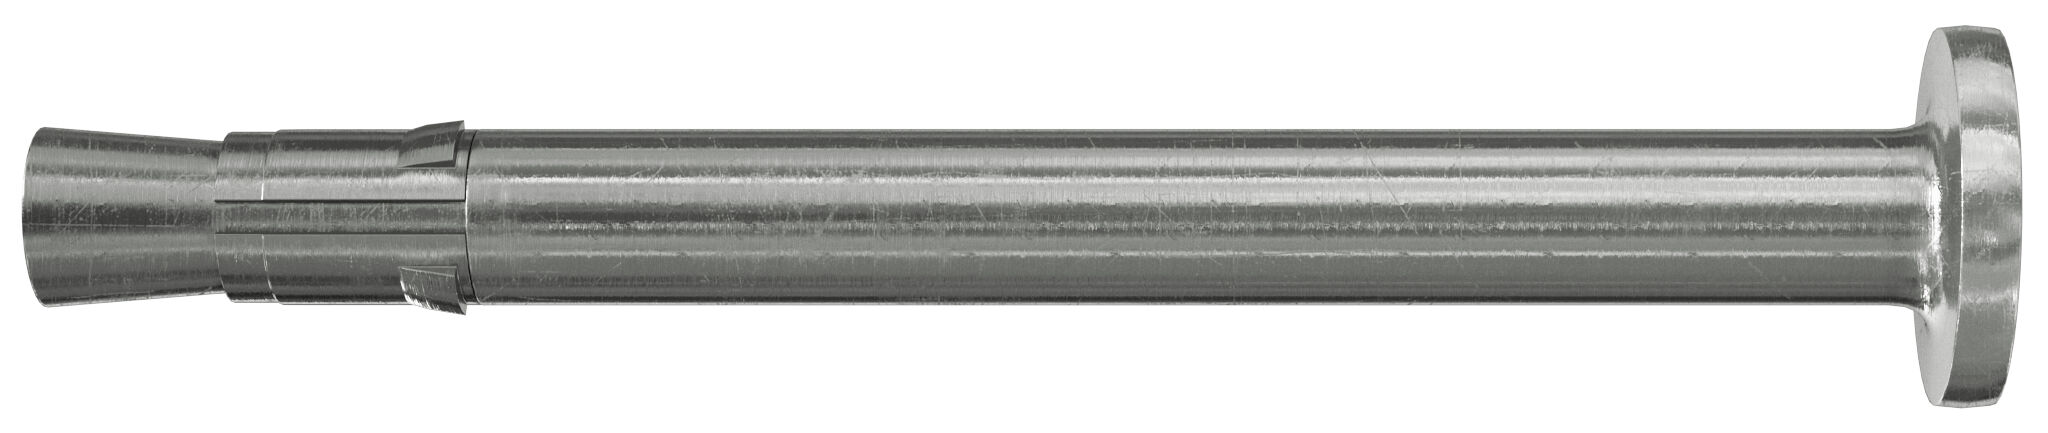 fischer Nagelanker FNA II 6 x 30/5 HCR hochkorrosionsbeständiger Stahl